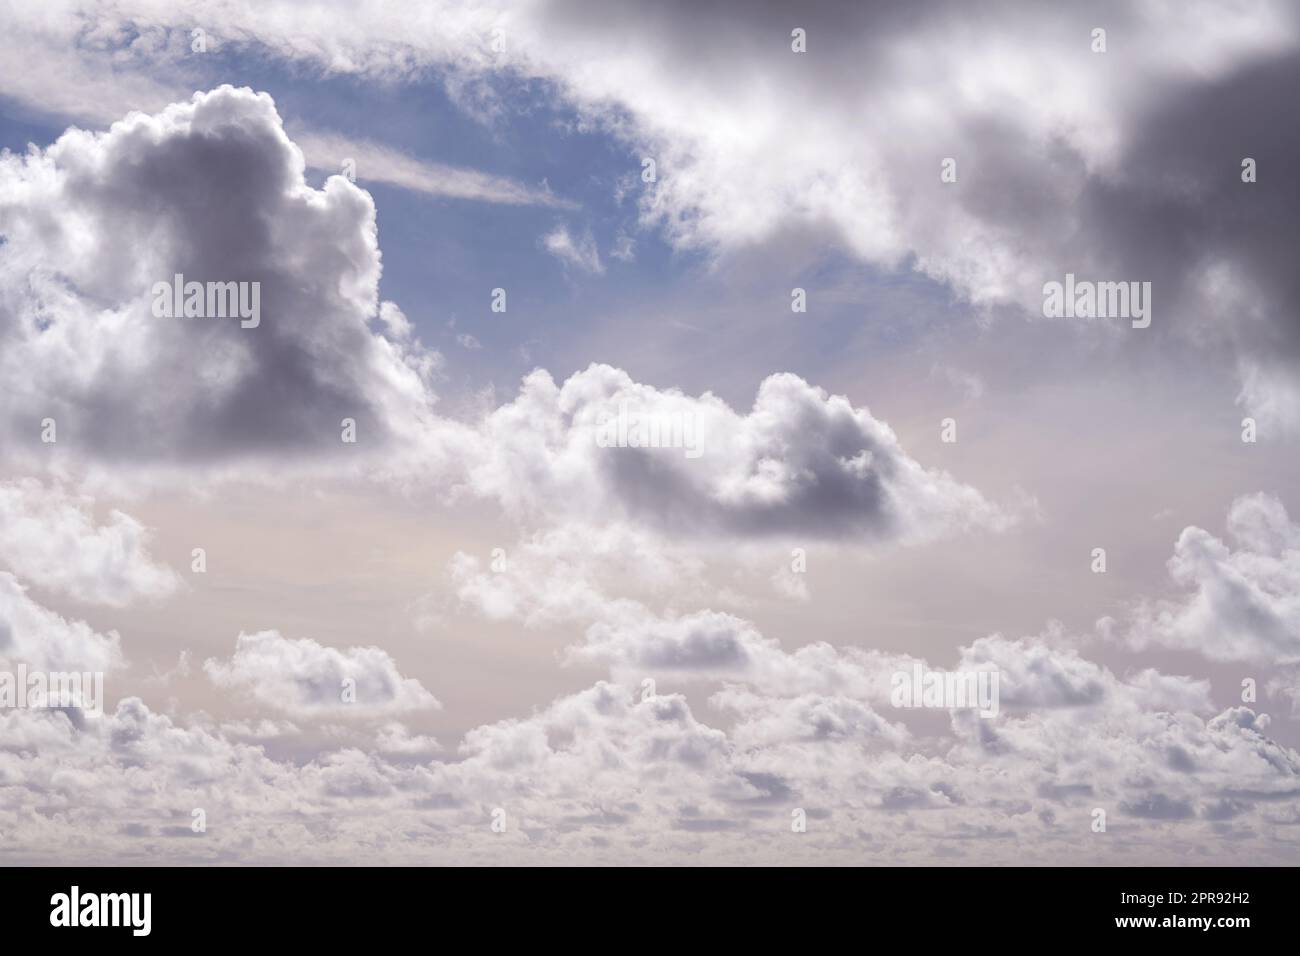 Splendida vista delle nuvole di cumulus in un cielo blu con spazio per le copie. Paesaggio nuvoloso morbido con soffici nubi durante il giorno. Le nuvole bianche permeate in genere simboleggiano l'illuminazione, la spiritualità e il paradiso Foto Stock